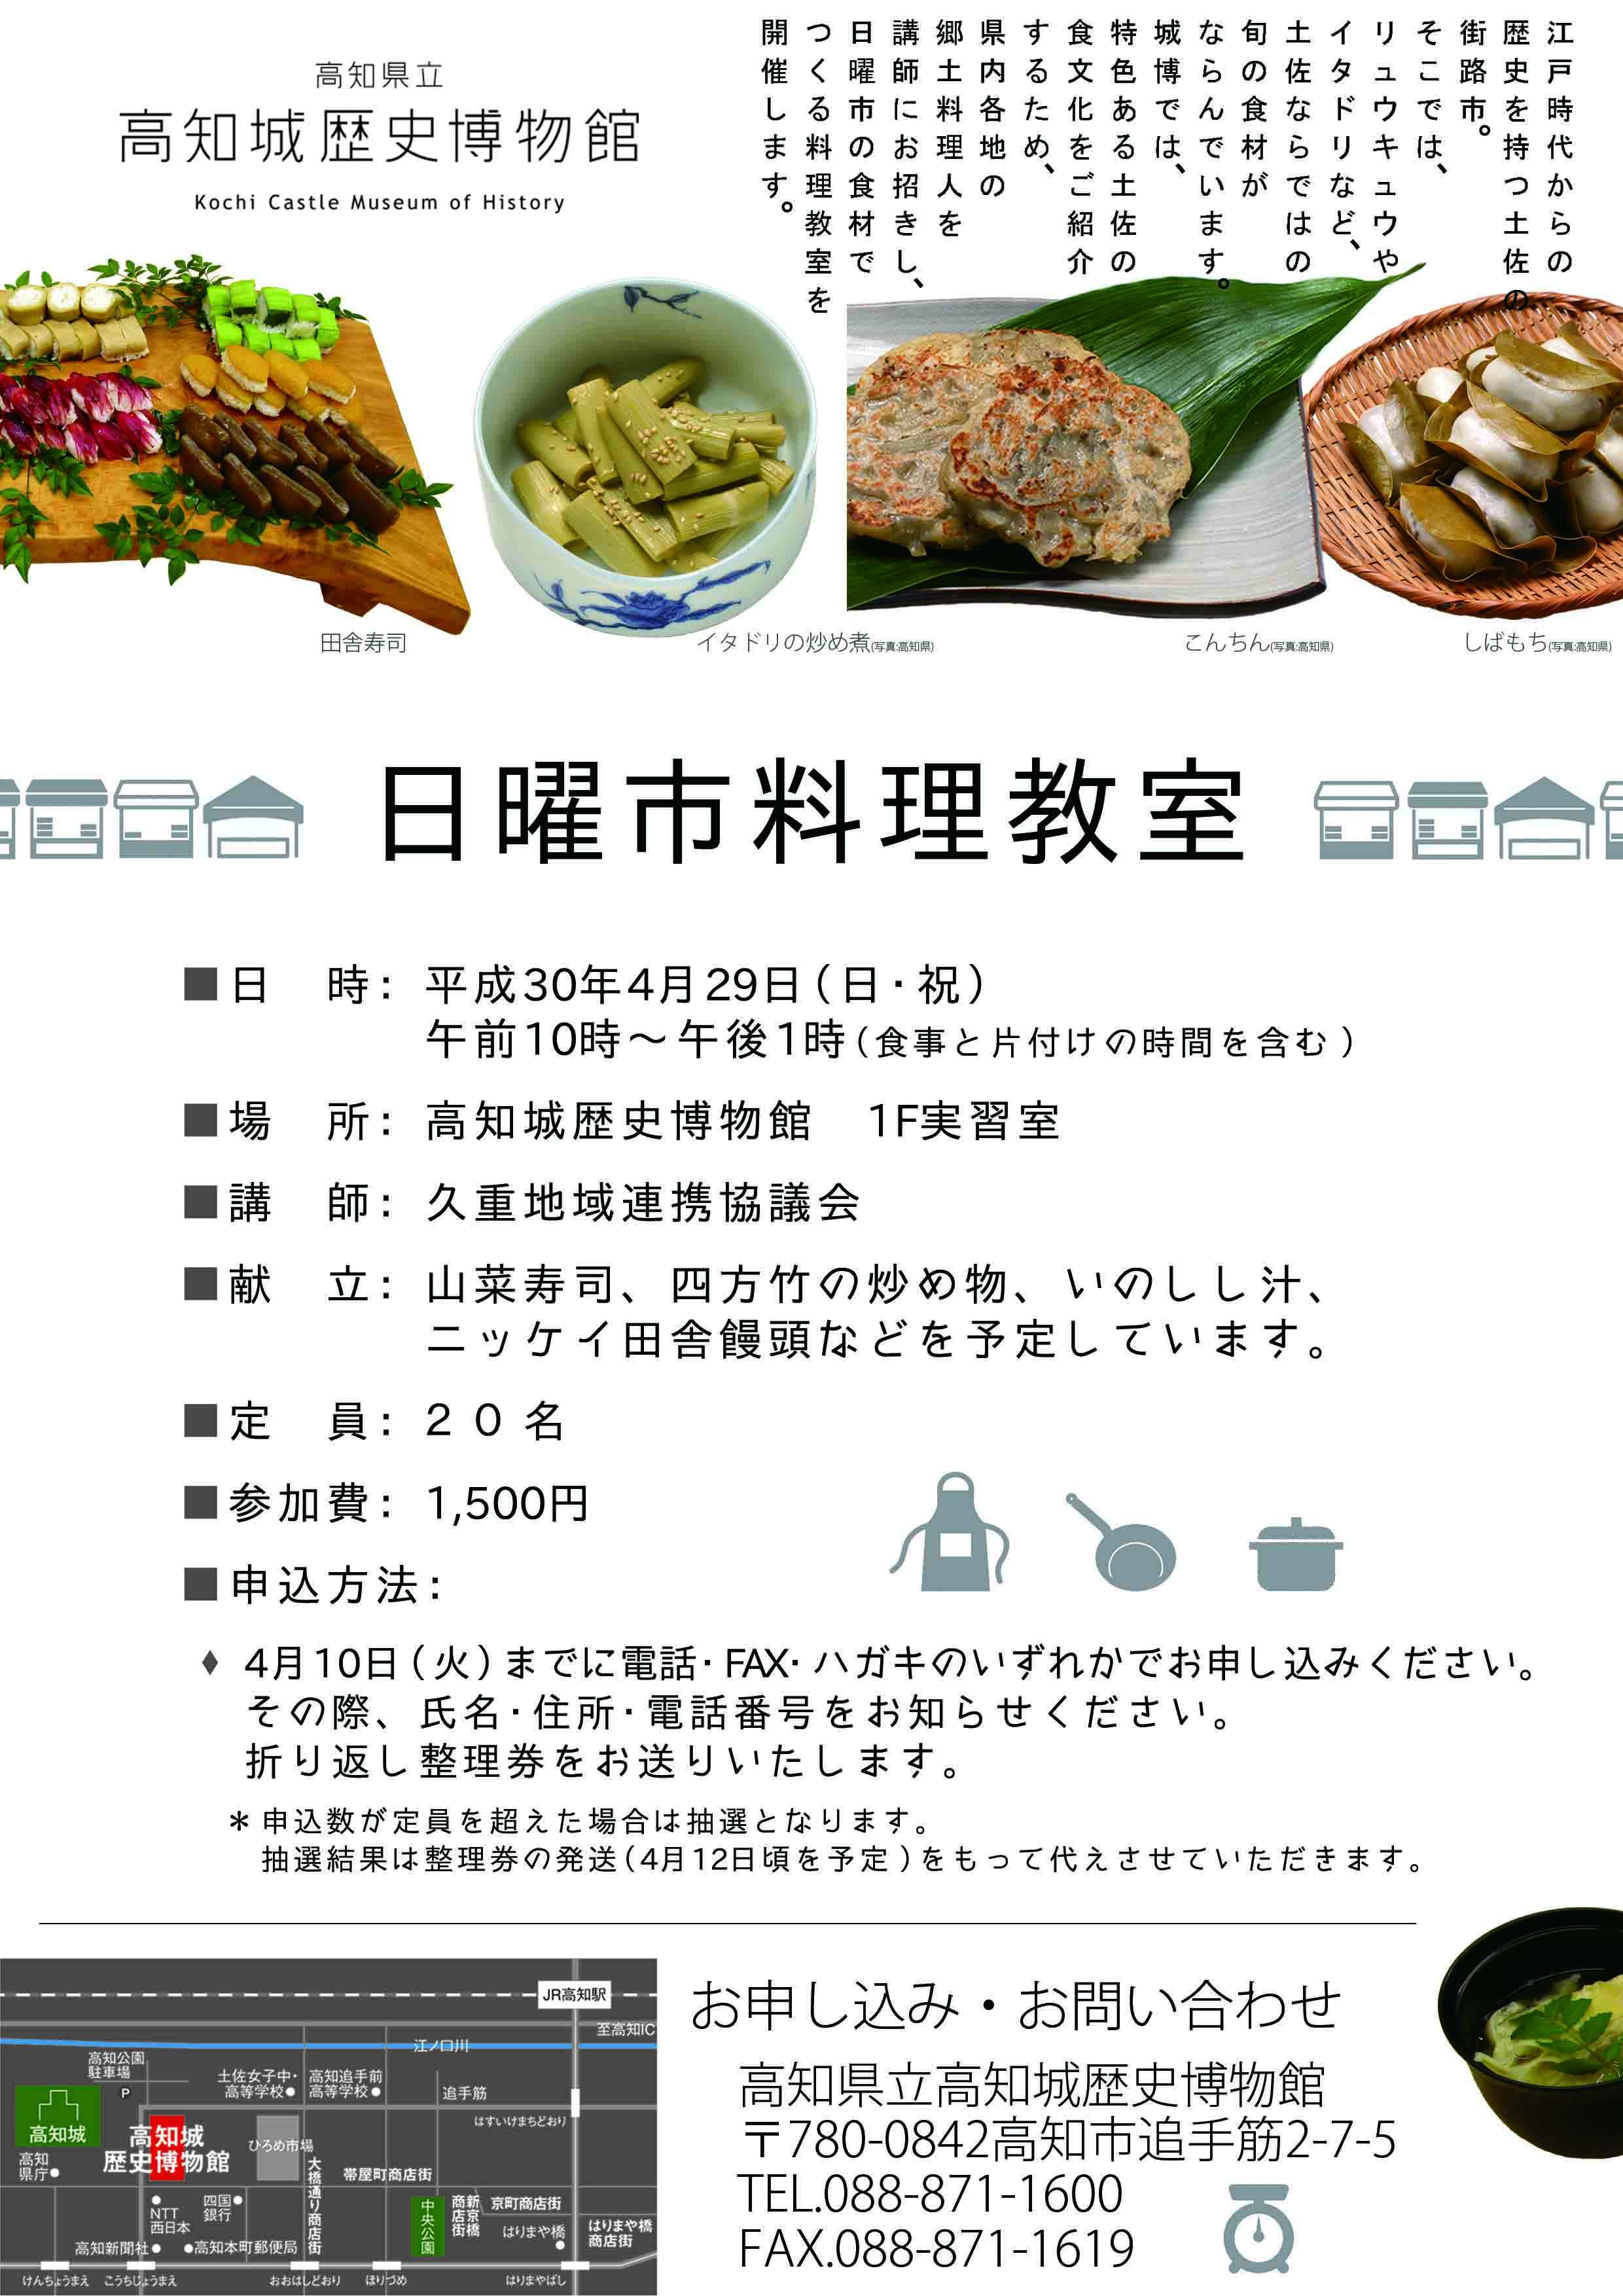 H30 4料理教室チラシ 高知城歴史博物館